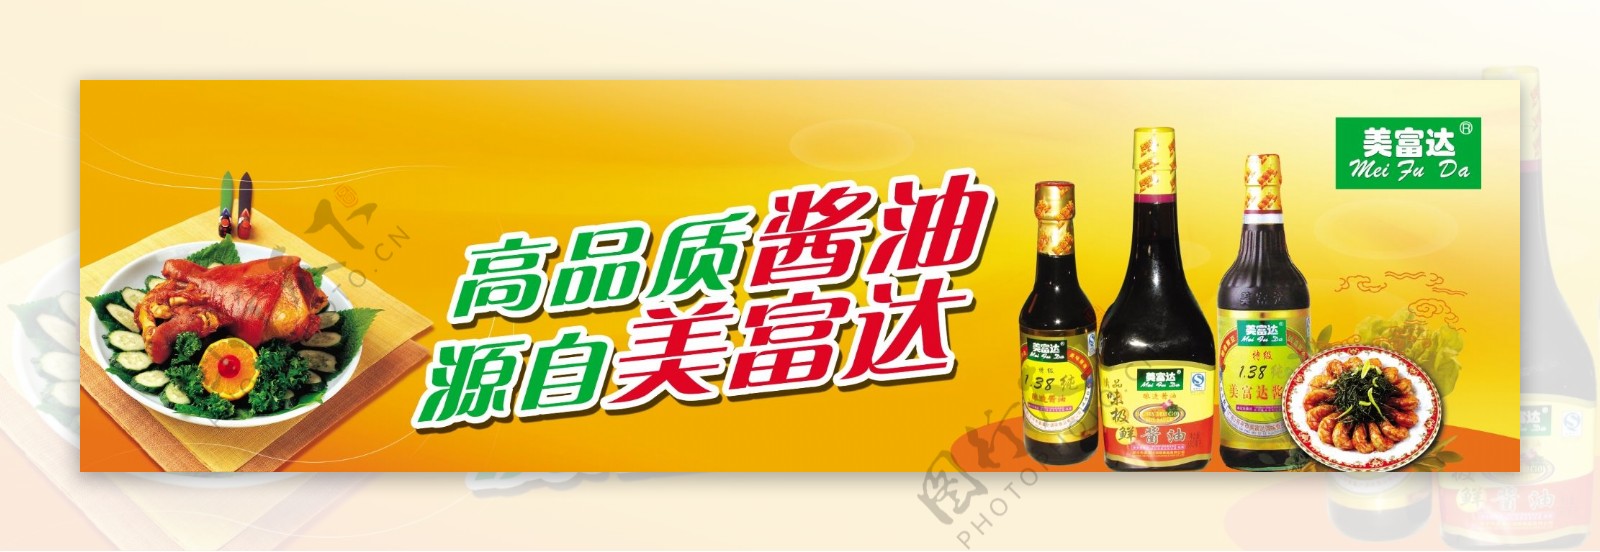 美富达酱油广告图片